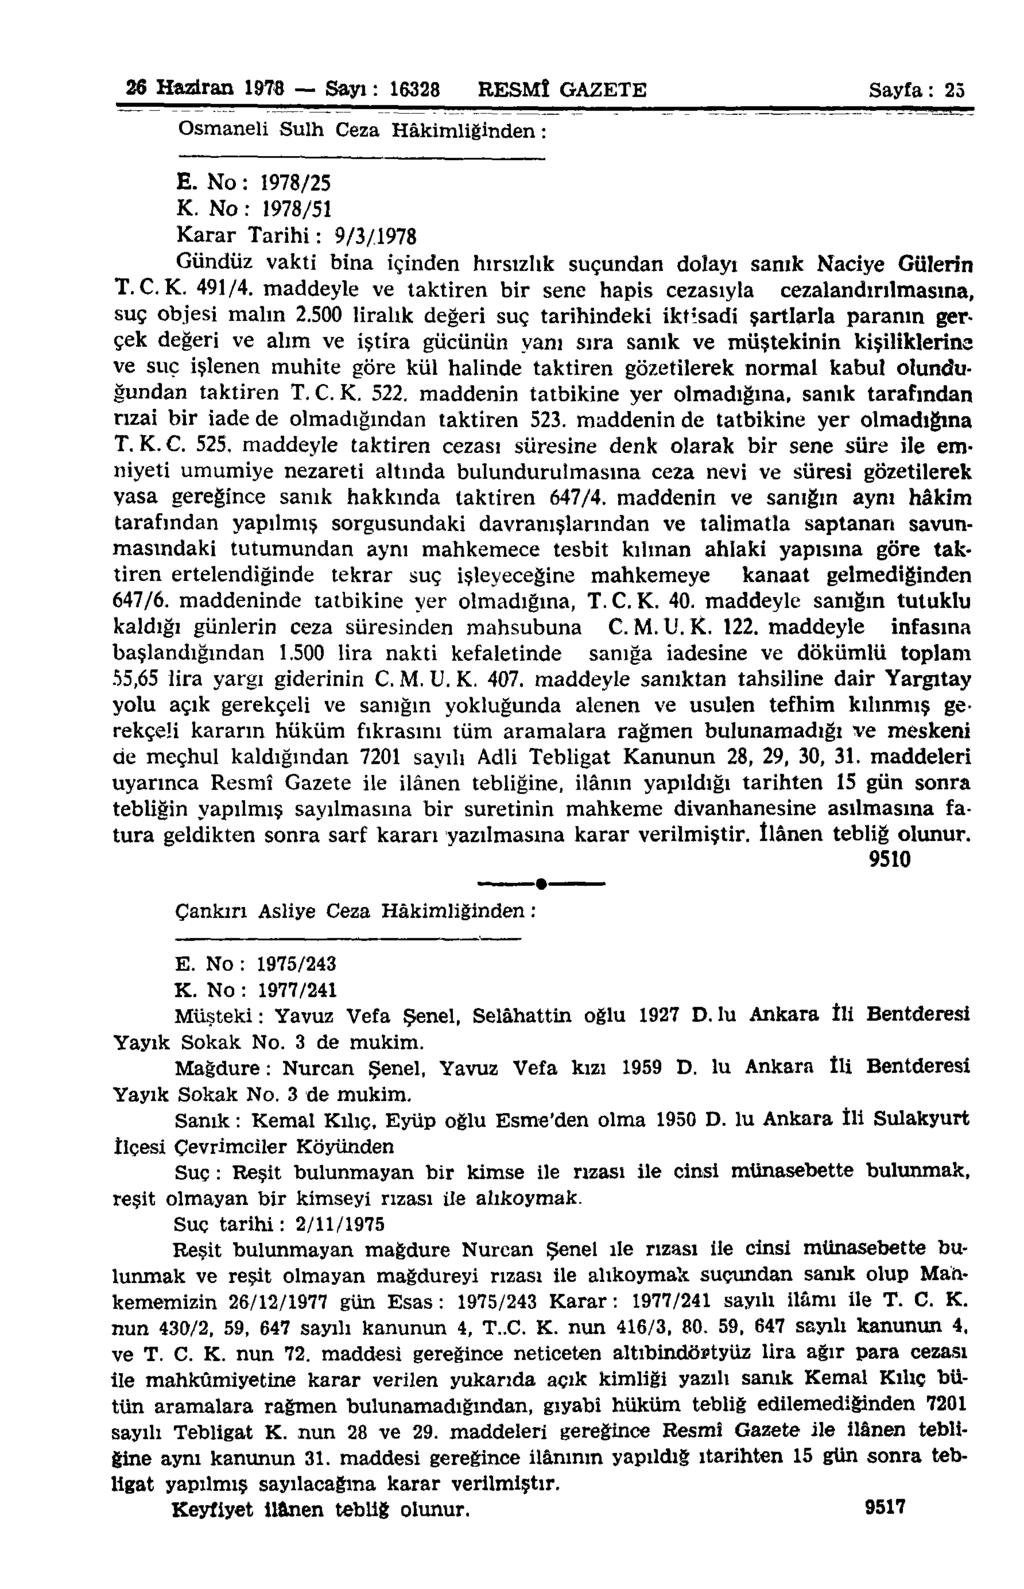 26 Haziran 1976 Sayı: 16328 RESMÎ GAZETE Sayfa: 25 Osmaneli Sulh Ceza Hâkimliğinden: E. No: 1978/25 K.